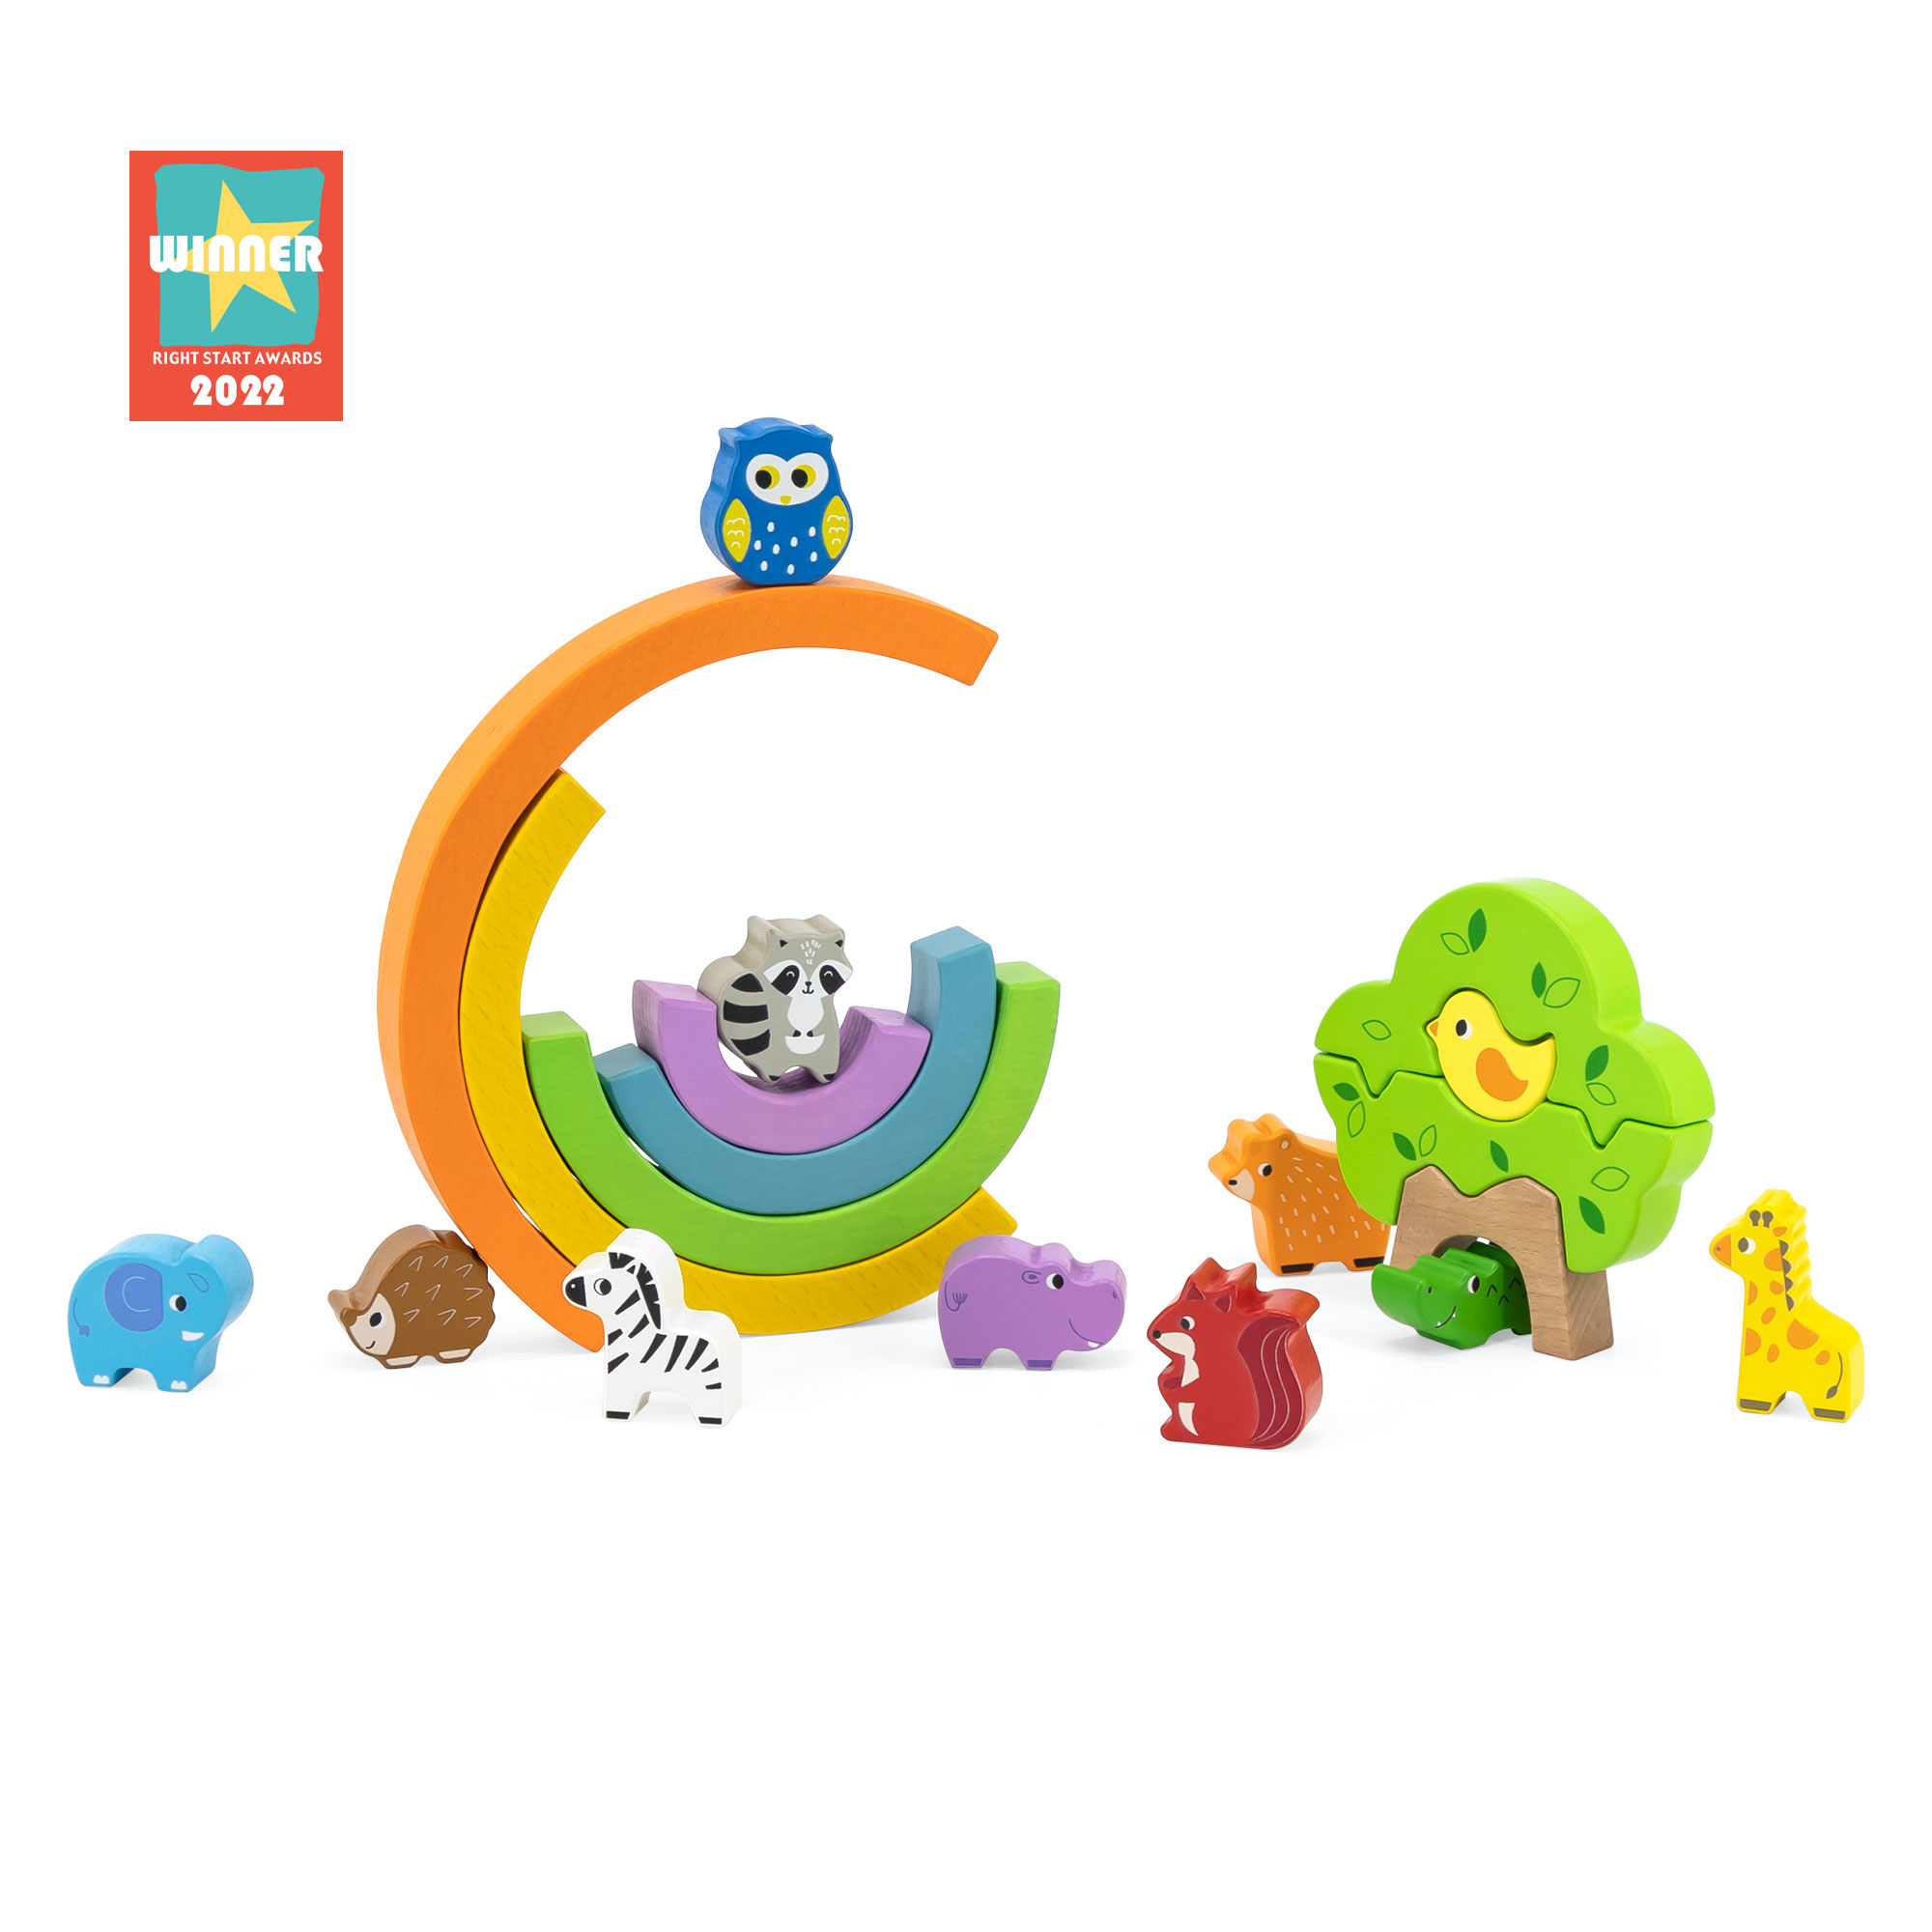 Продукція Viga Toys отримала премію UK RIGHT START AWARDS у категорії 'Дитячі іграшки' та 'Будівництво'.